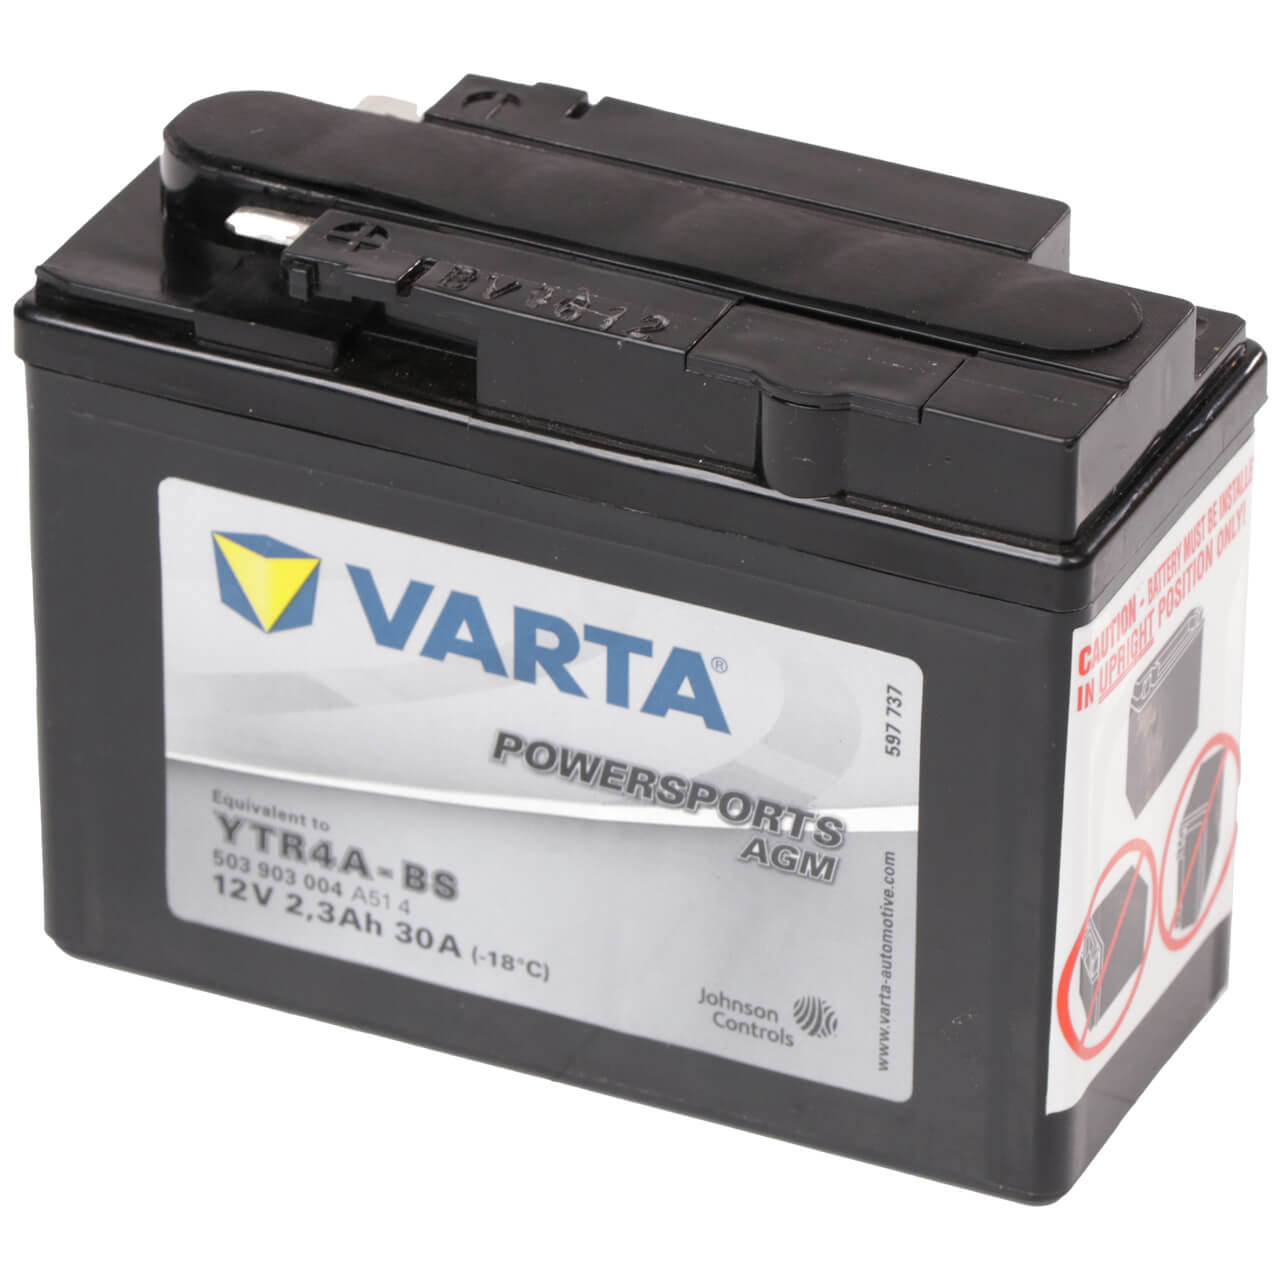 Motorradbatterie Varta Powersports AGM YTR4A-BS 503903 12V 2,3Ah Seite rechts